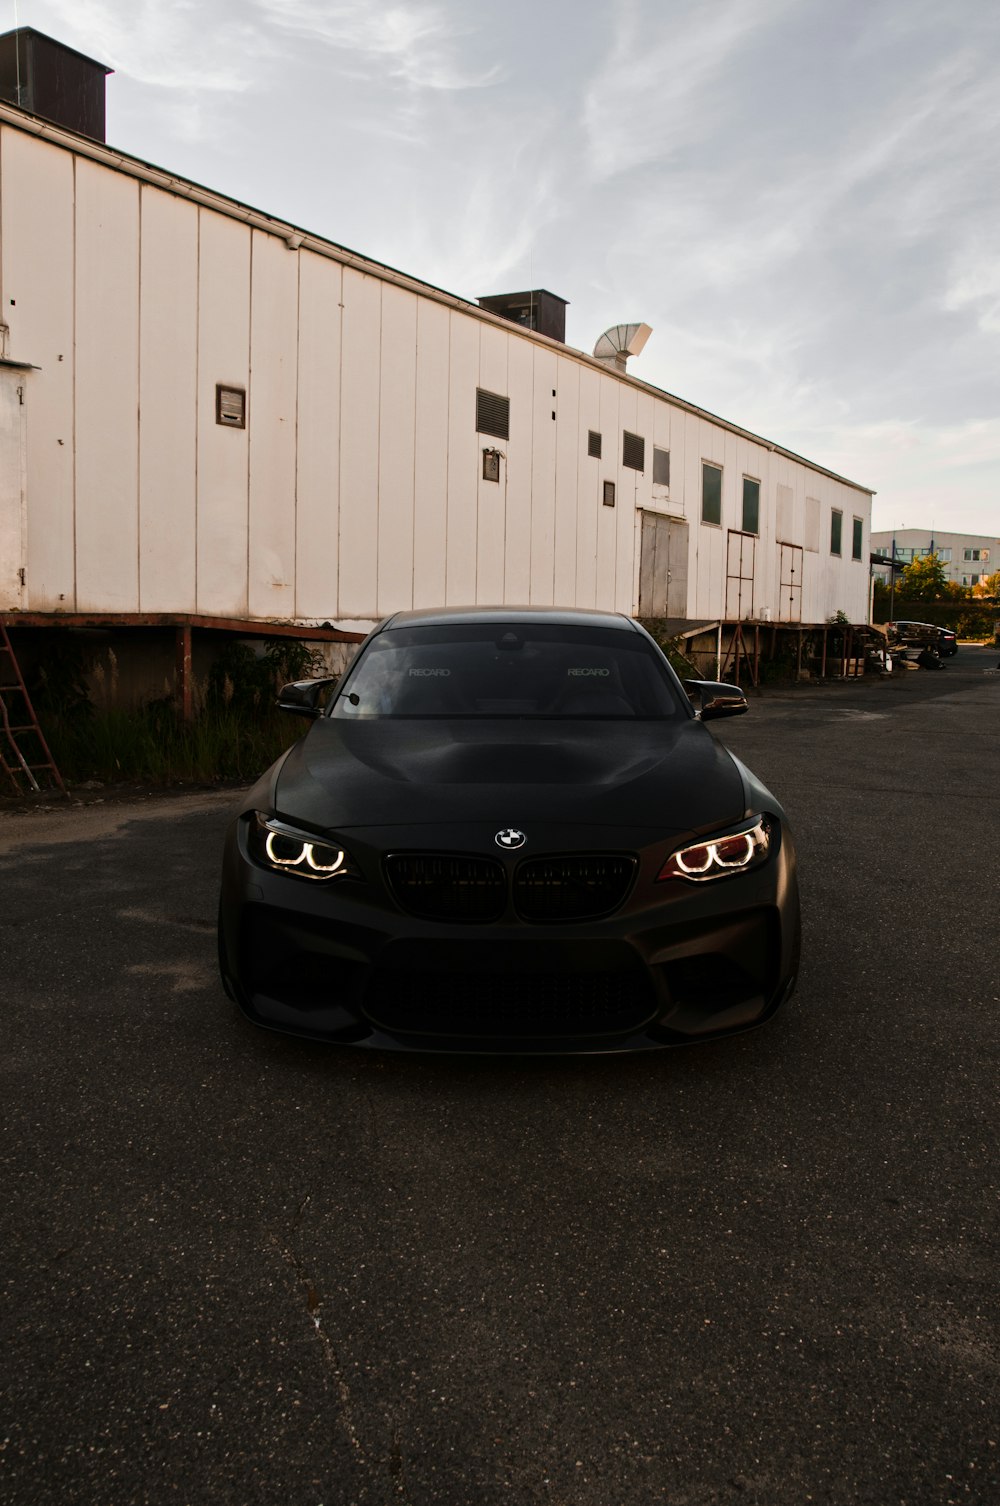 Coche BMW negro aparcado cerca de un garaje blanco durante el día